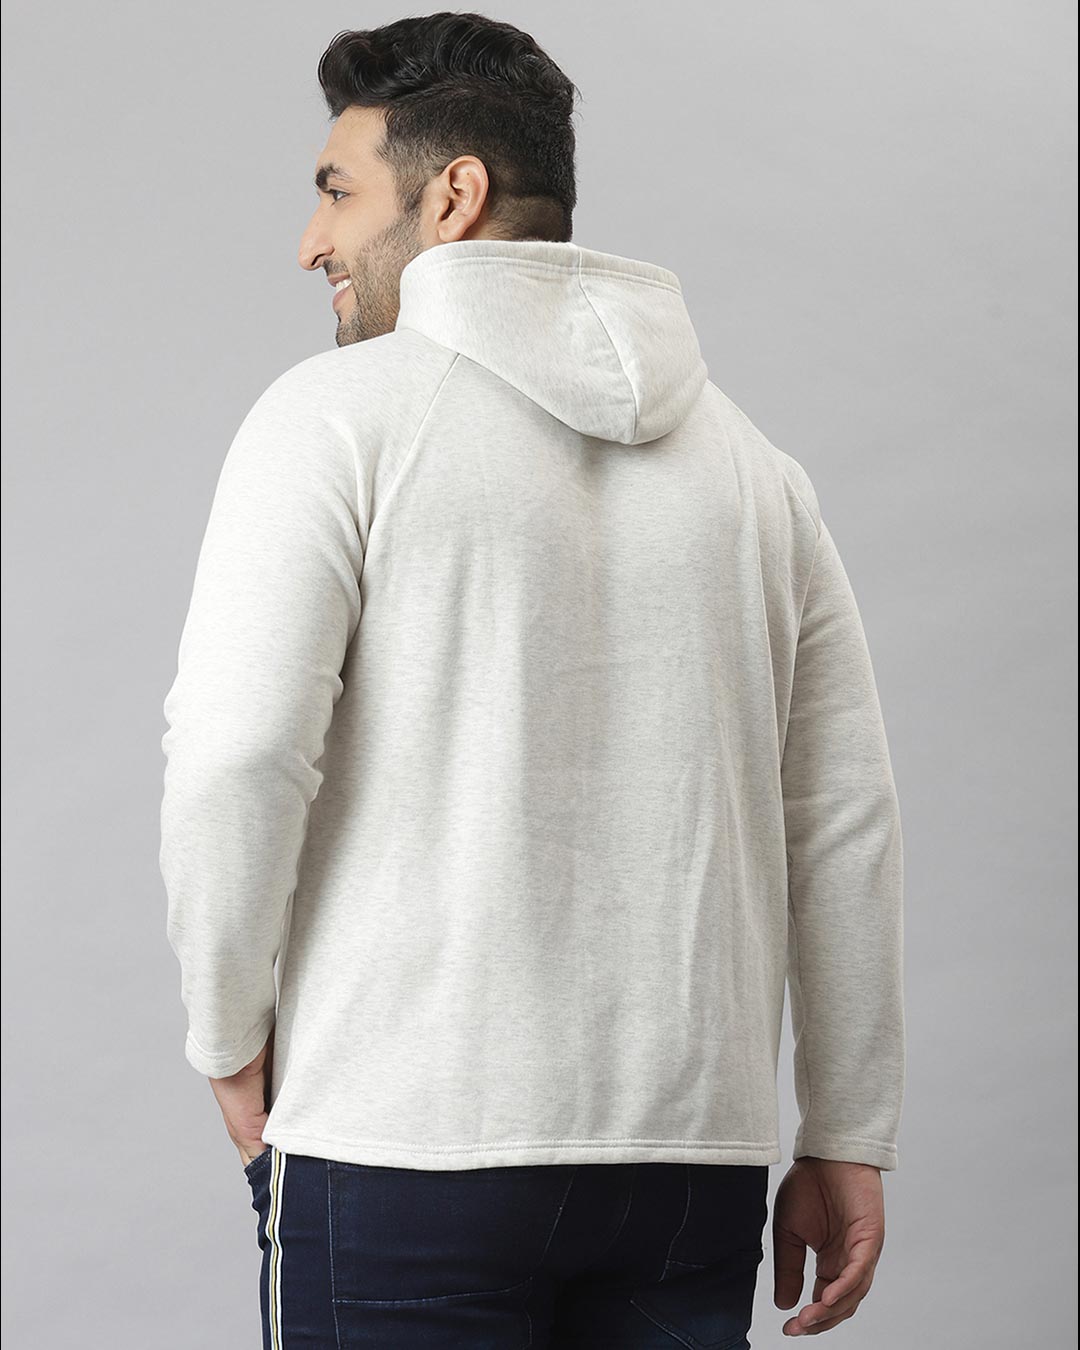 Shop Men's White Stylish Casual Jacket-Back